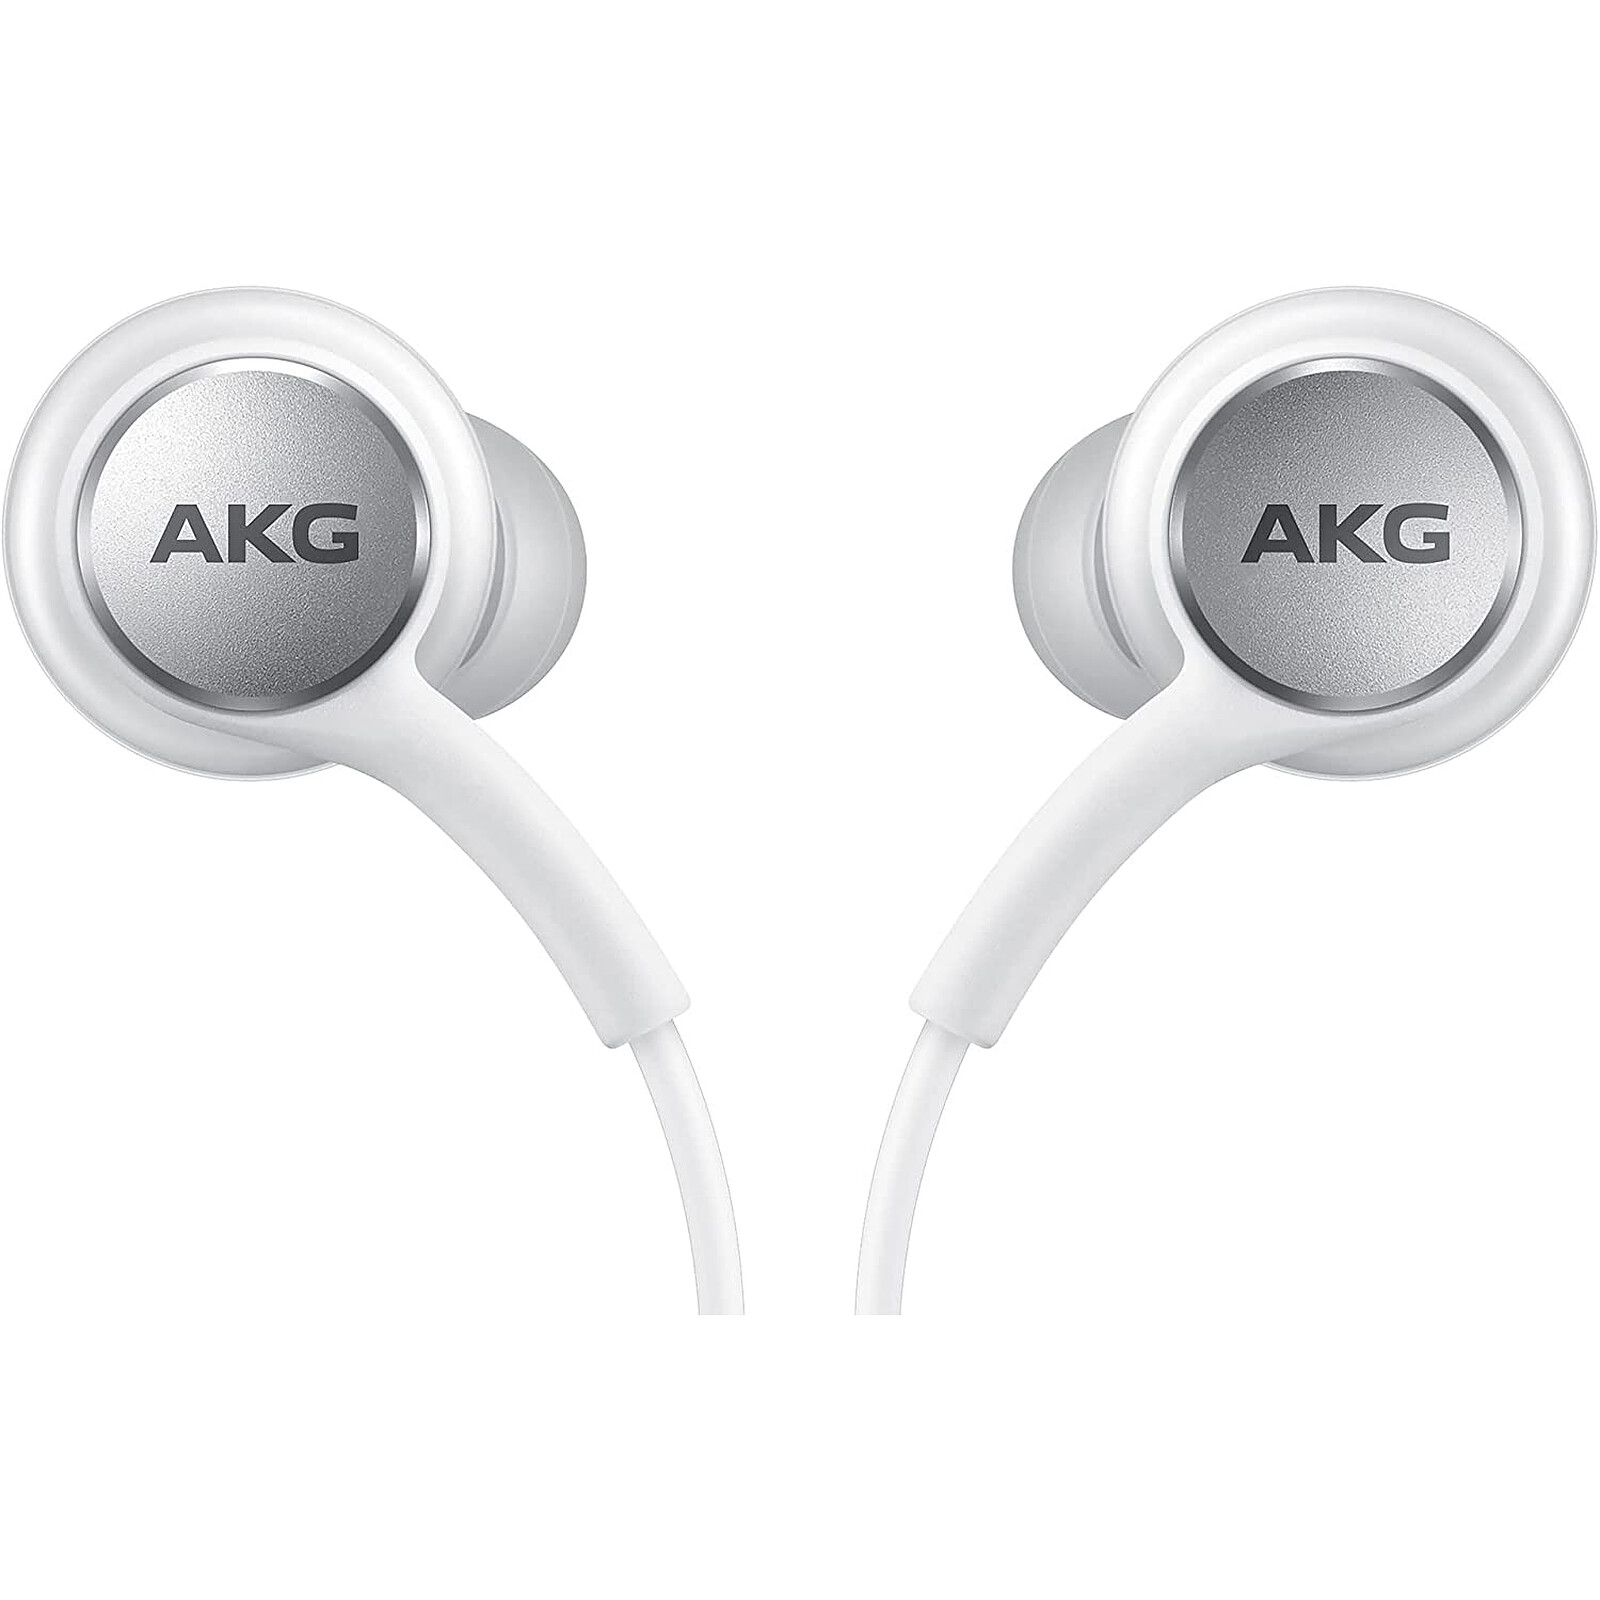 1 Samsung ecouteurs filaires Type C Akgg Noir audio studio son Stereo  équilibre confortabl